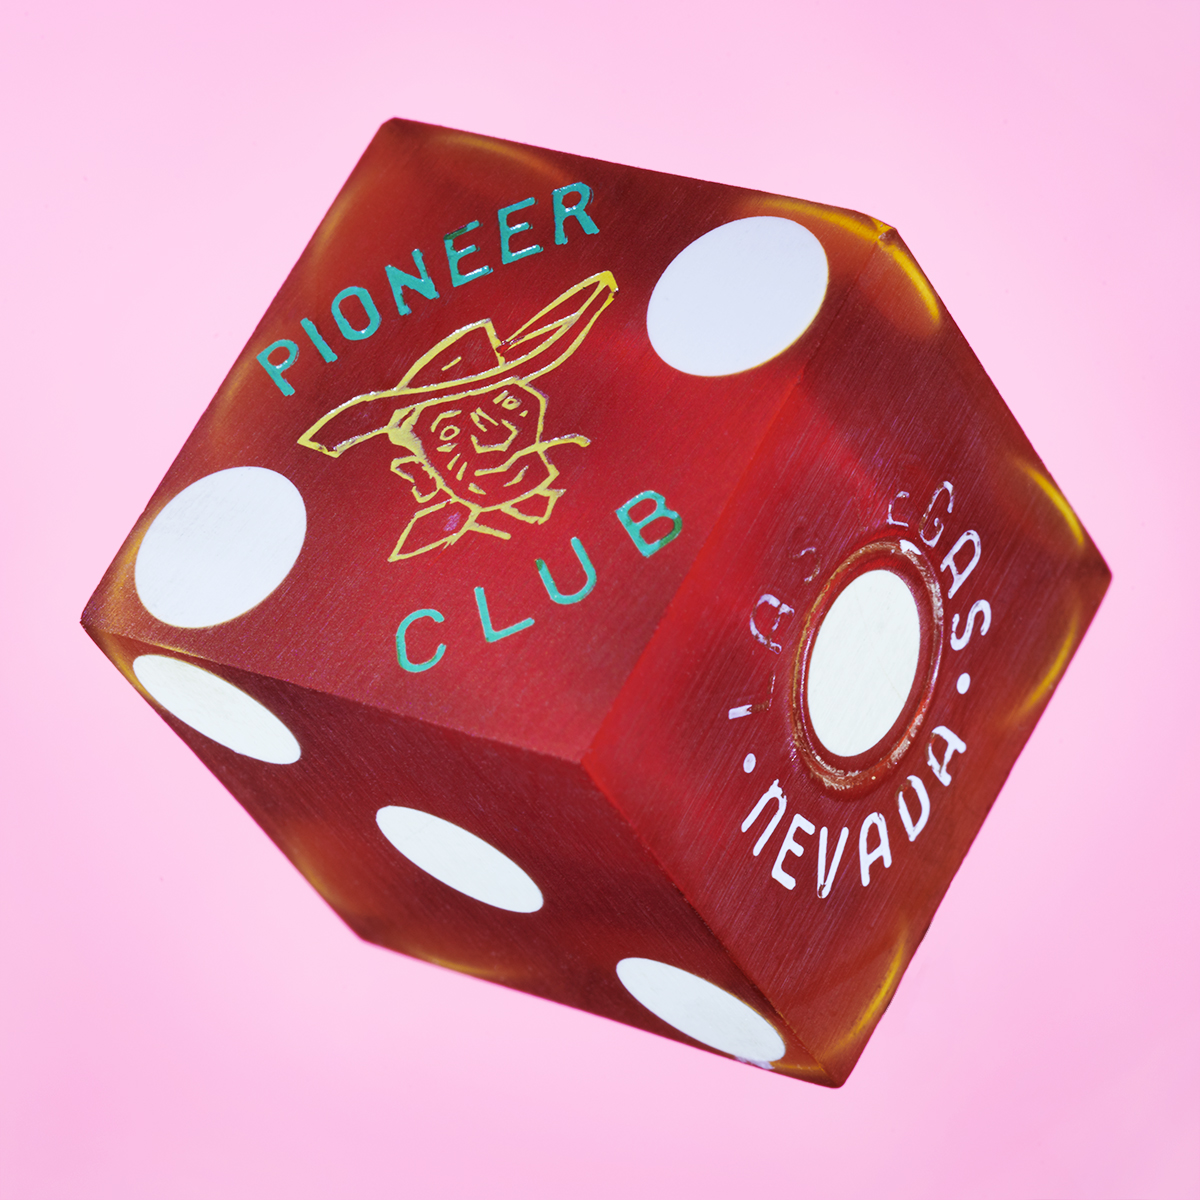 Pioneer_Club_Las_Vegas_small1